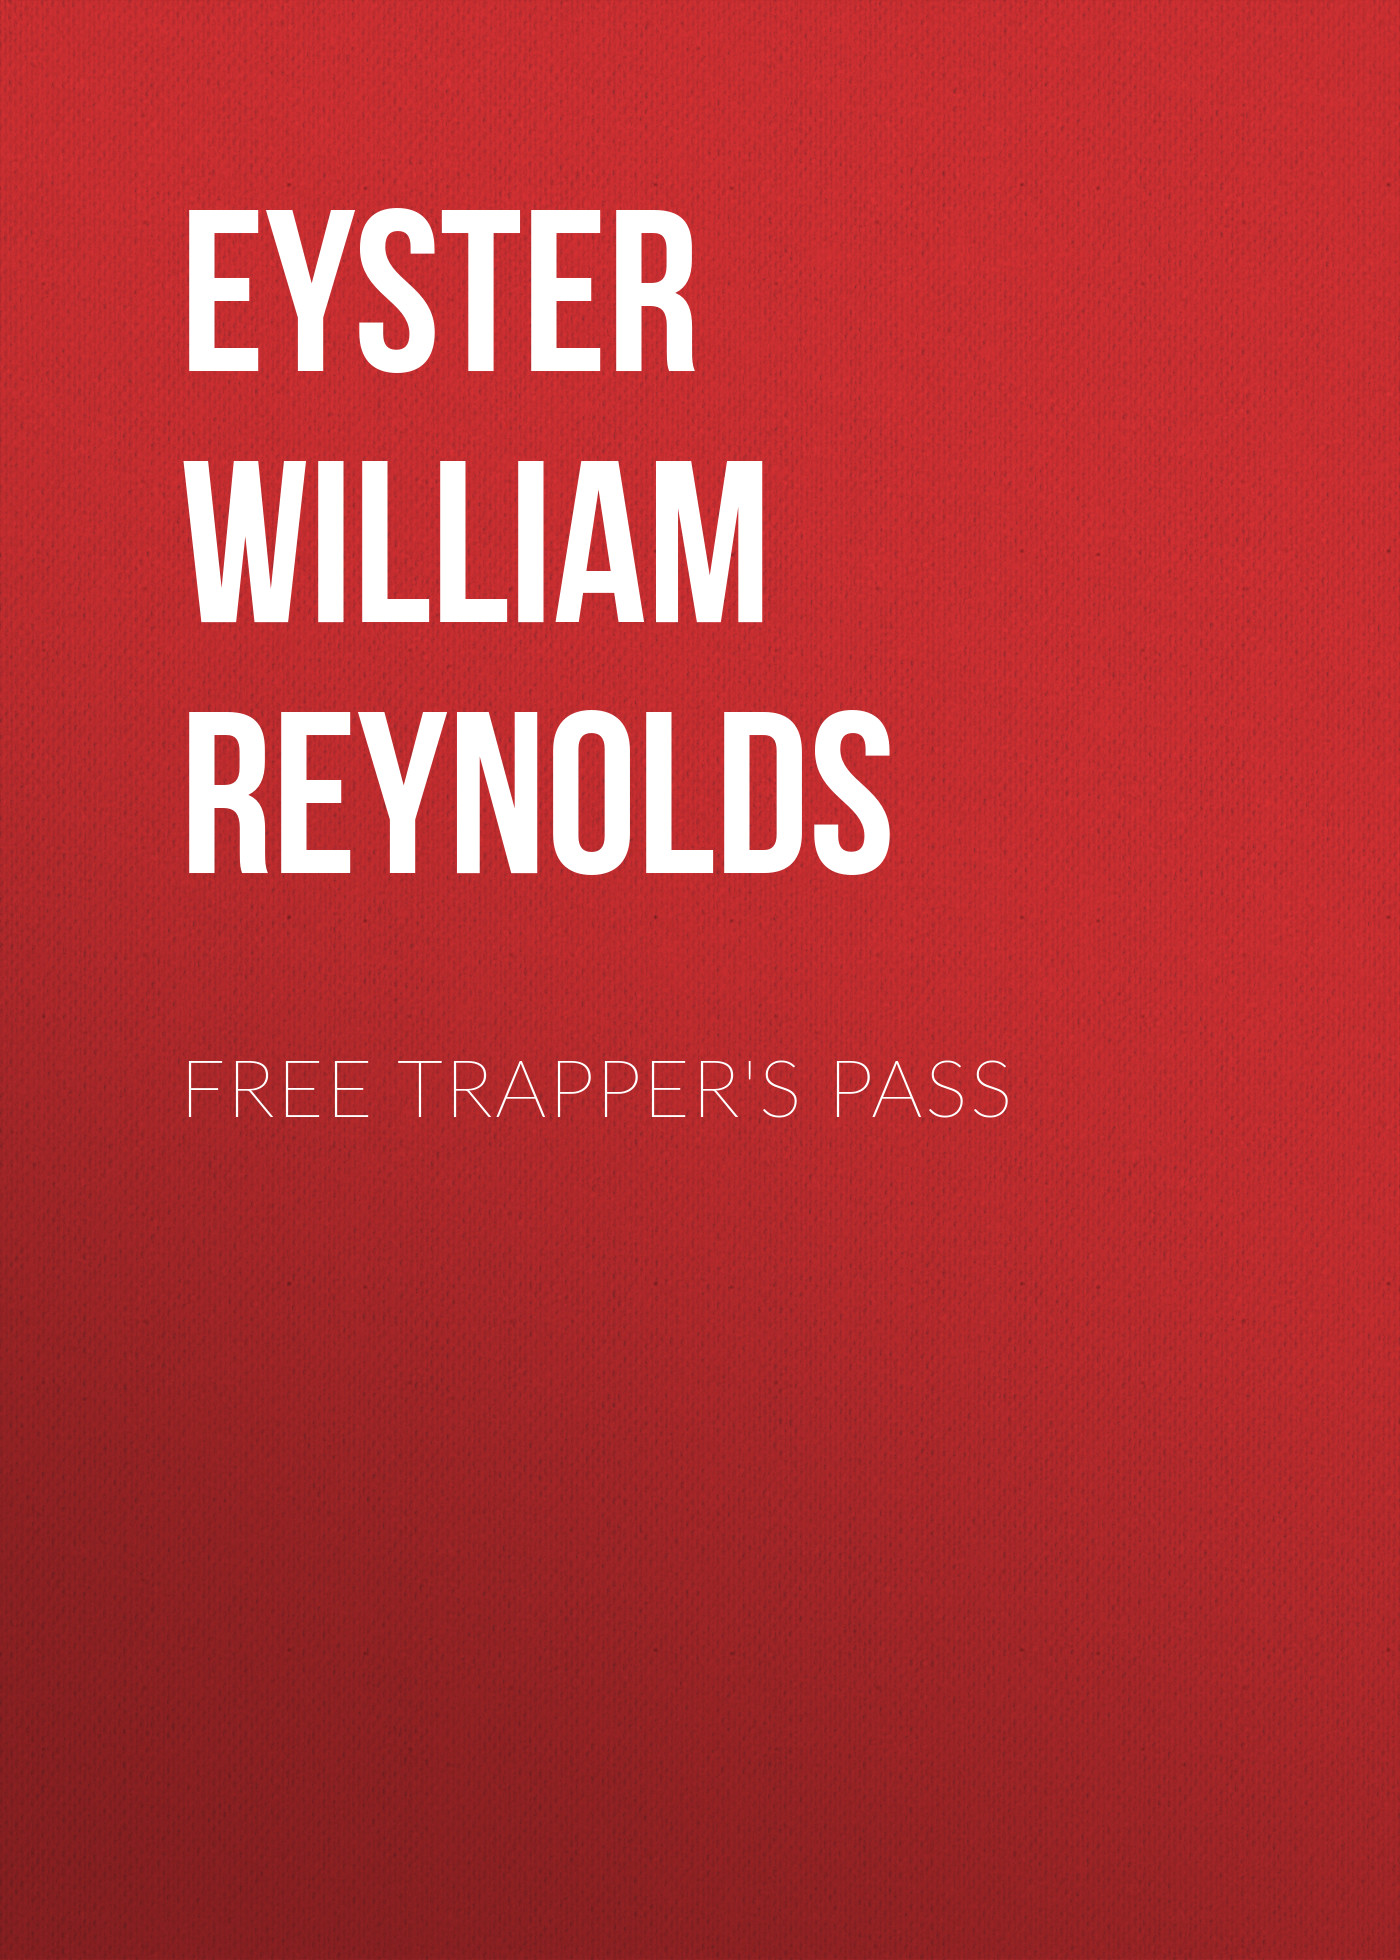 Книга Free Trapper's Pass из серии , созданная William Eyster, может относится к жанру Зарубежная старинная литература, Зарубежная классика. Стоимость электронной книги Free Trapper's Pass с идентификатором 24714633 составляет 0 руб.